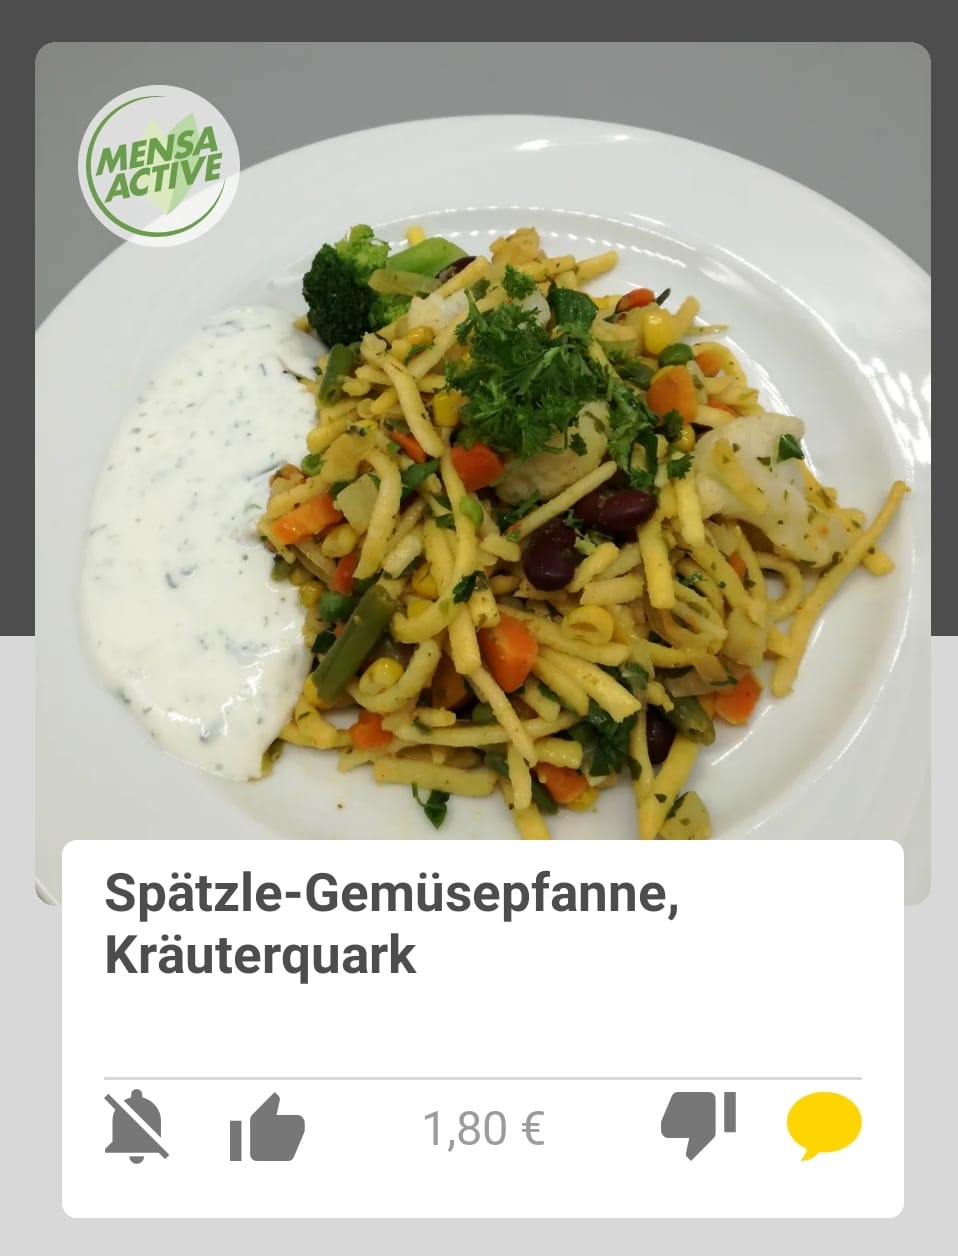 Fleischlose Gericht gibt es zum Teil schon ab 1,80 Euro. / Screenshot: Swosy